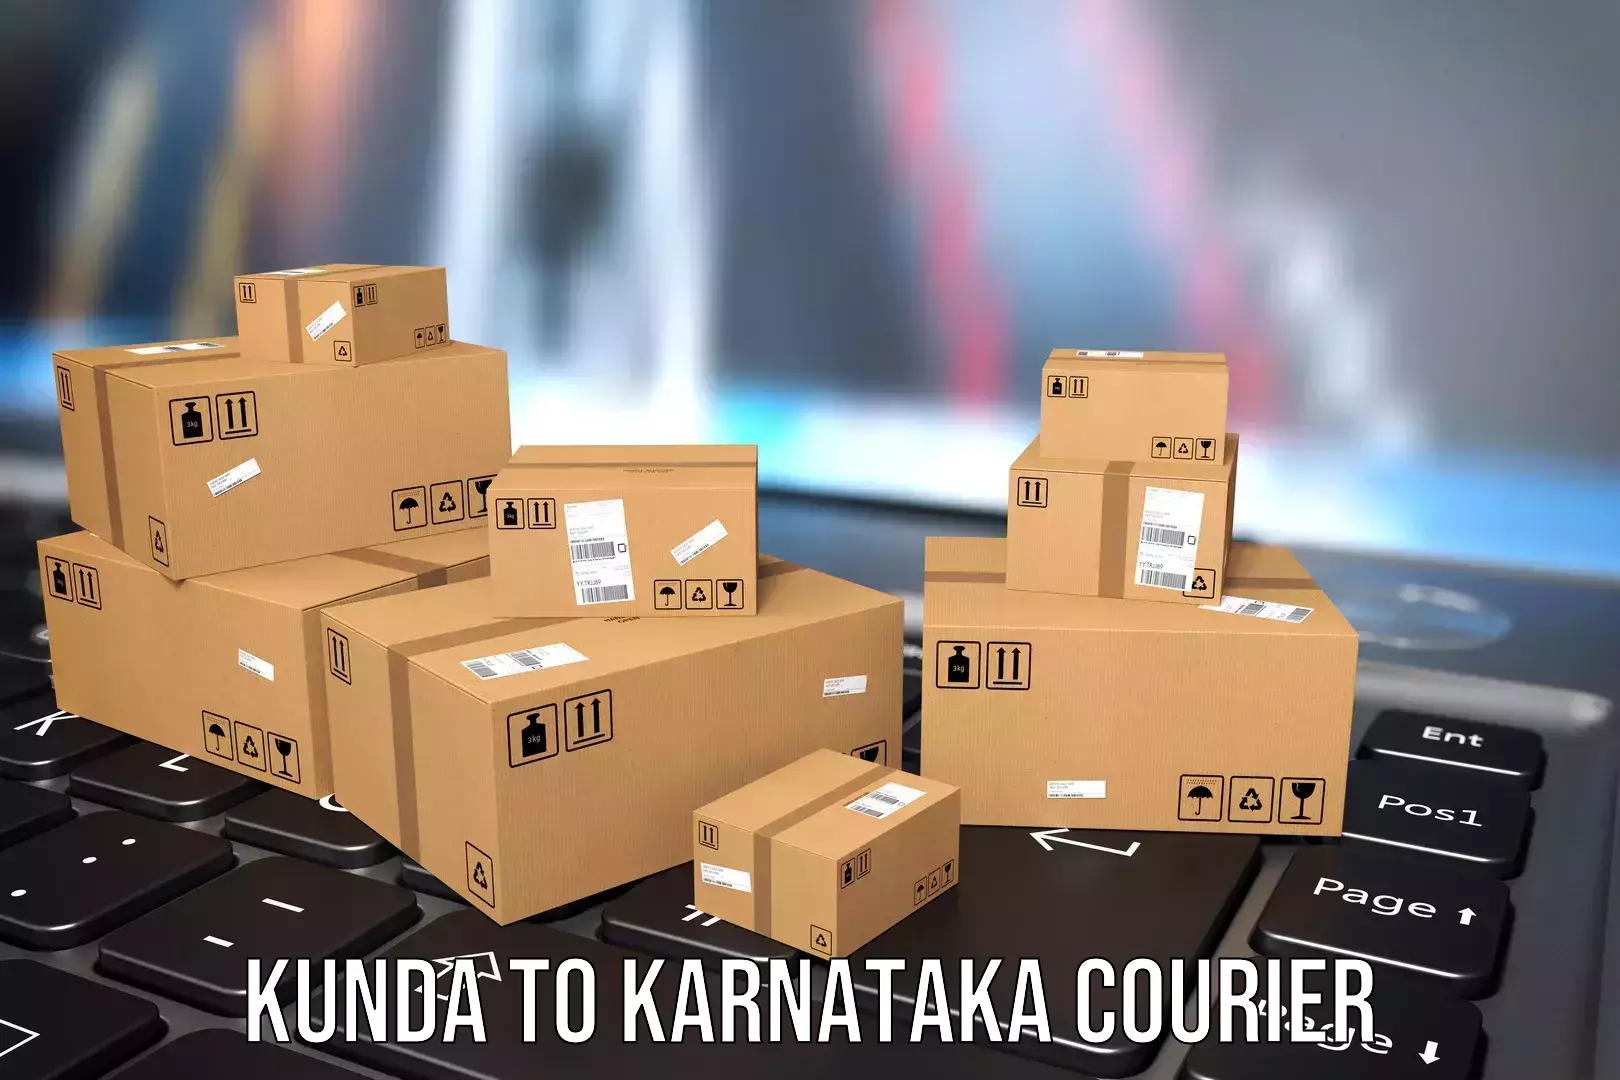 Efficient luggage delivery Kunda to Kanjarakatte